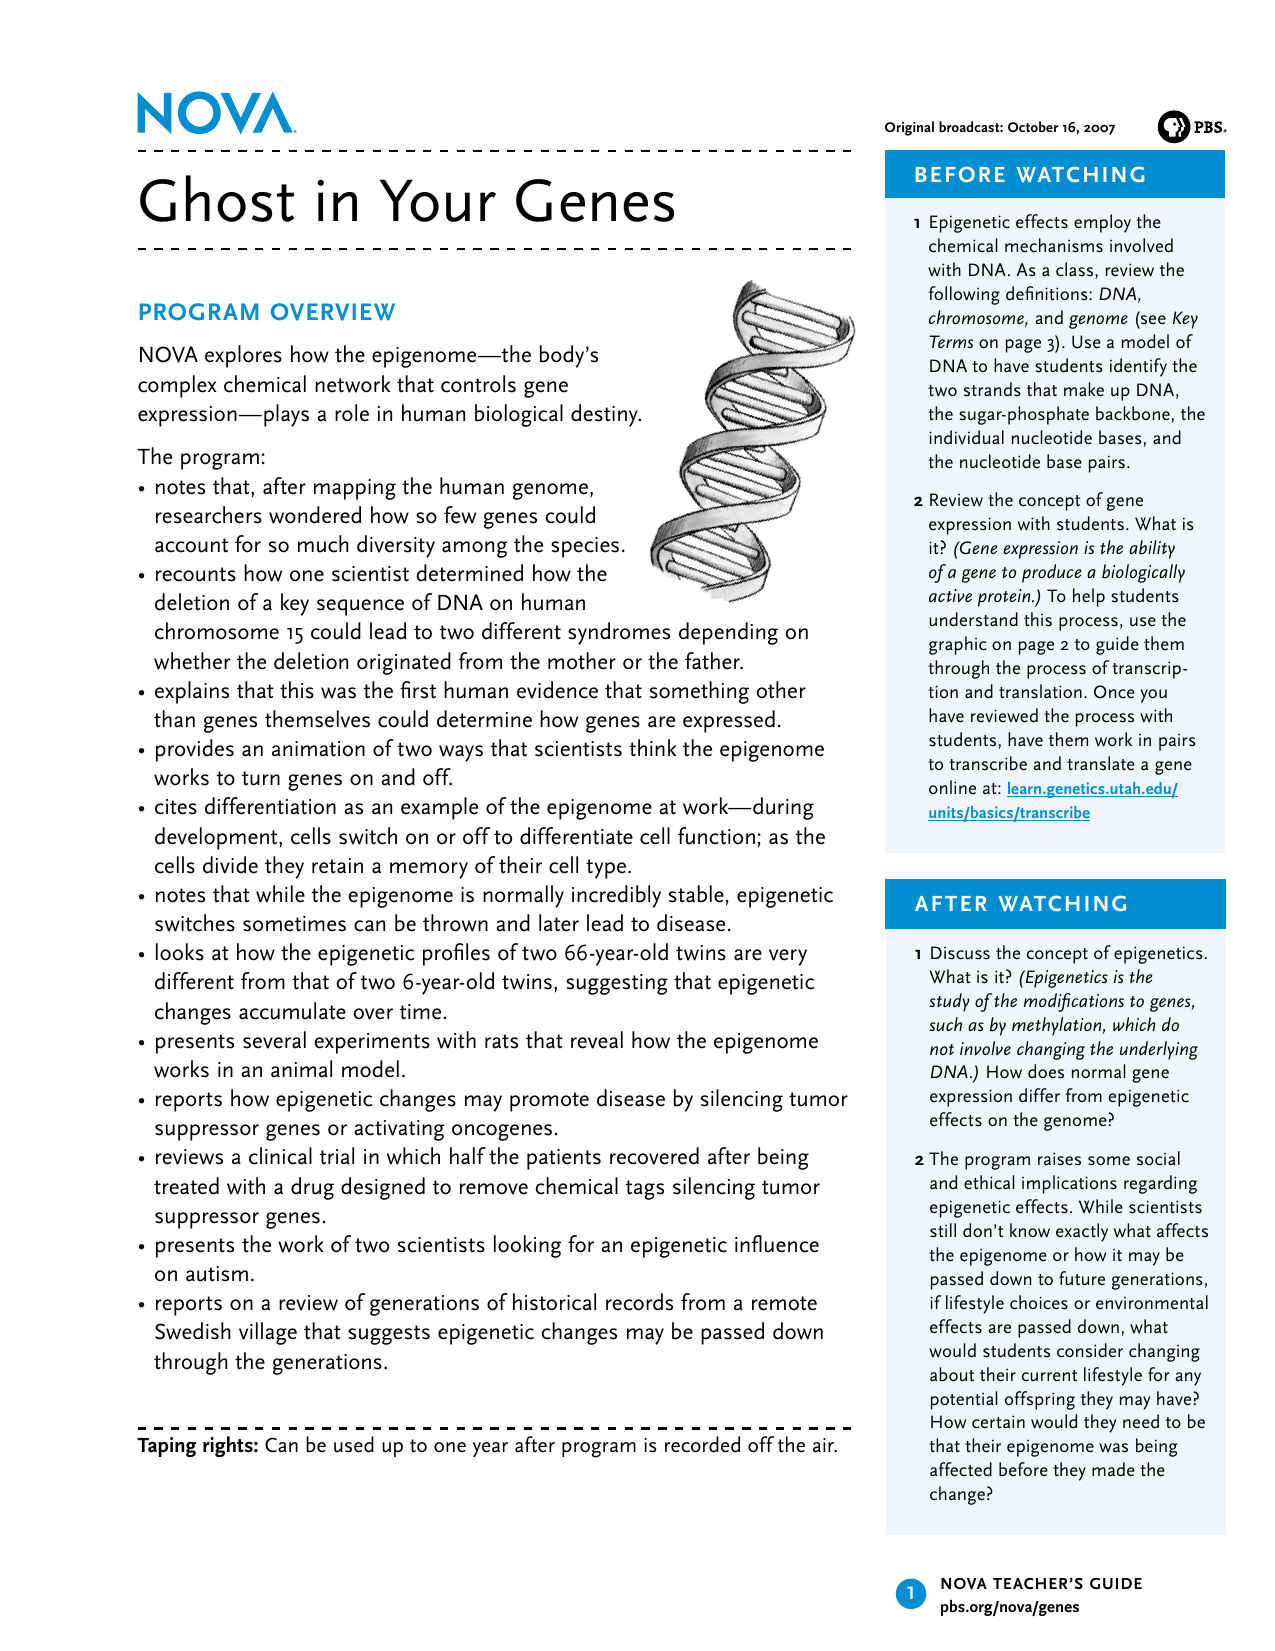 nova-ghost-in-your-genes-worksheet-answer-key-worksheet